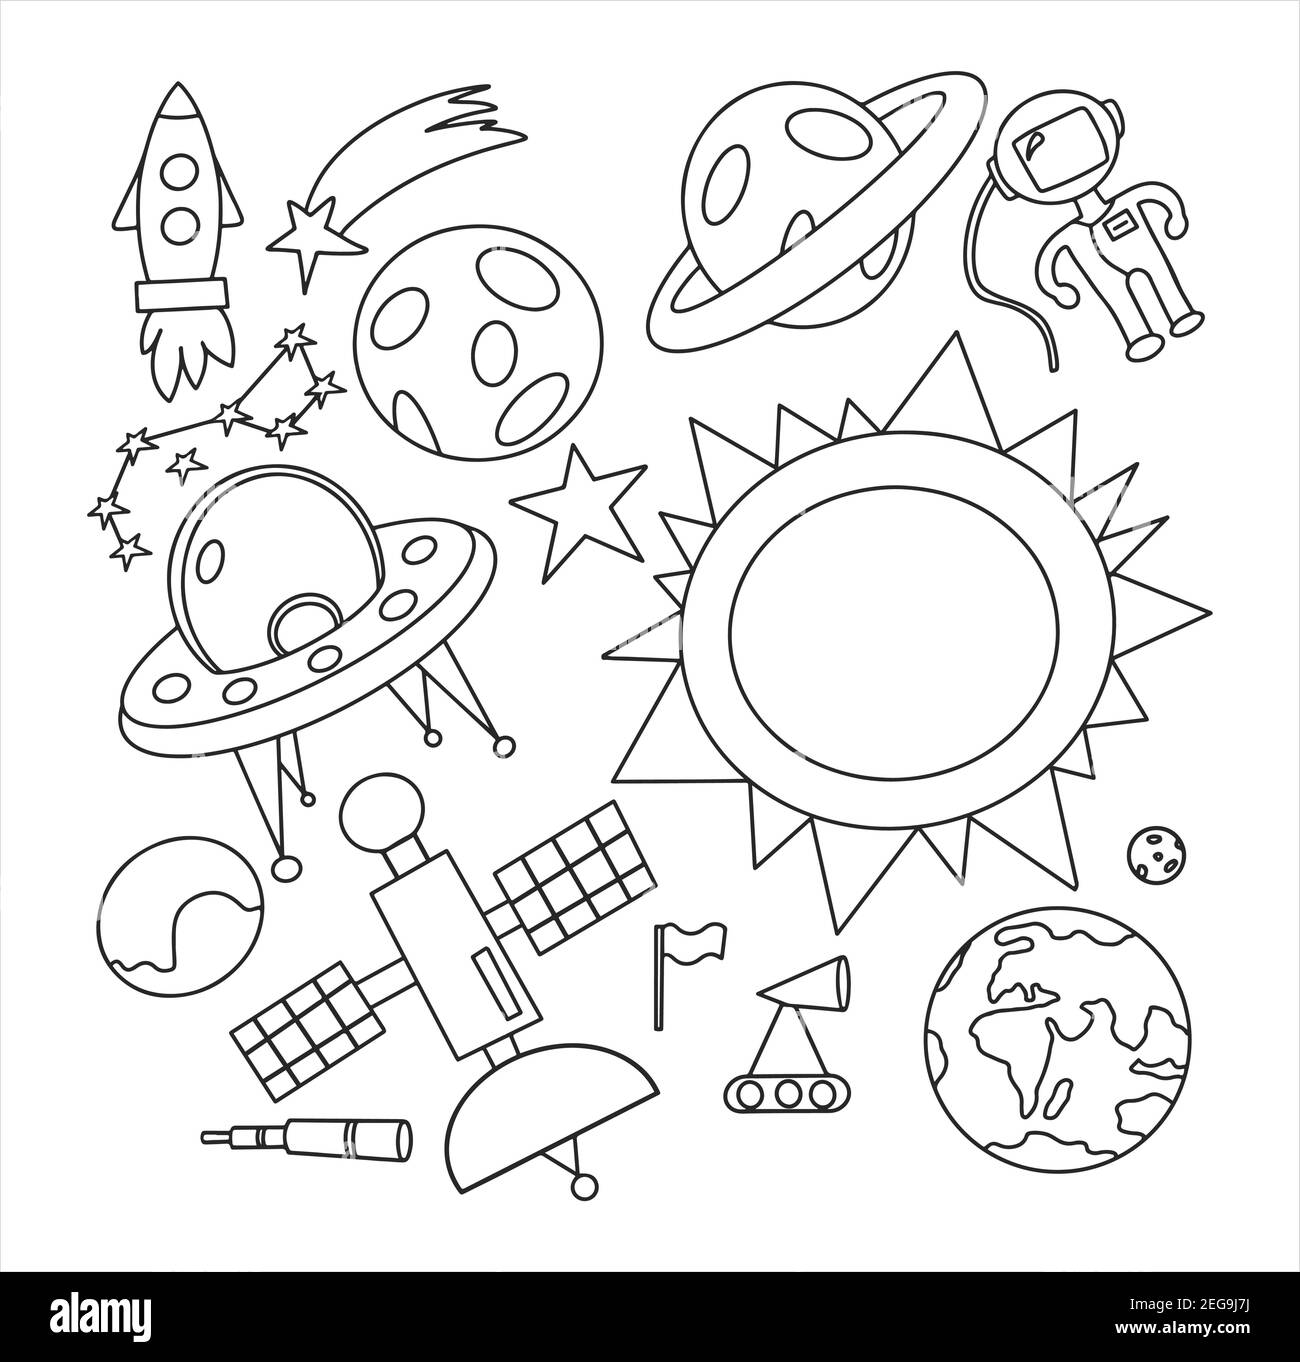 Hand zeichnen Raum Illustration mit einer Rakete, Astronaut, Planeten und Aliens. Niedlich, Kinder s Vektor Zeichnung über Raumschiffe, fliegende Untertassen und Shuttl Stock Vektor